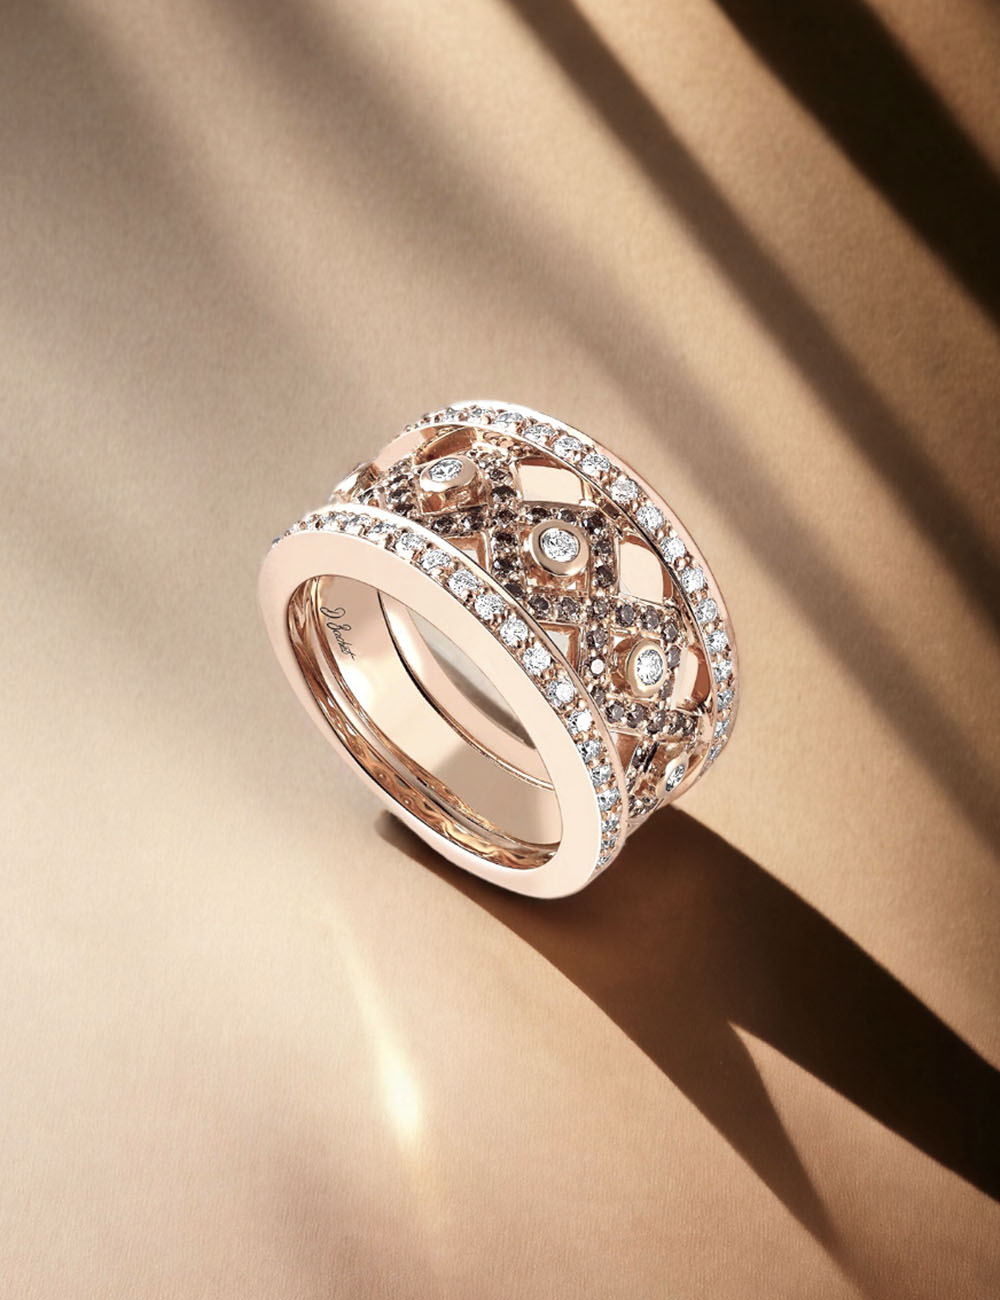 Bague Rock féminine en or rose avec diamants blancs et bruns, design élégant et moderne.